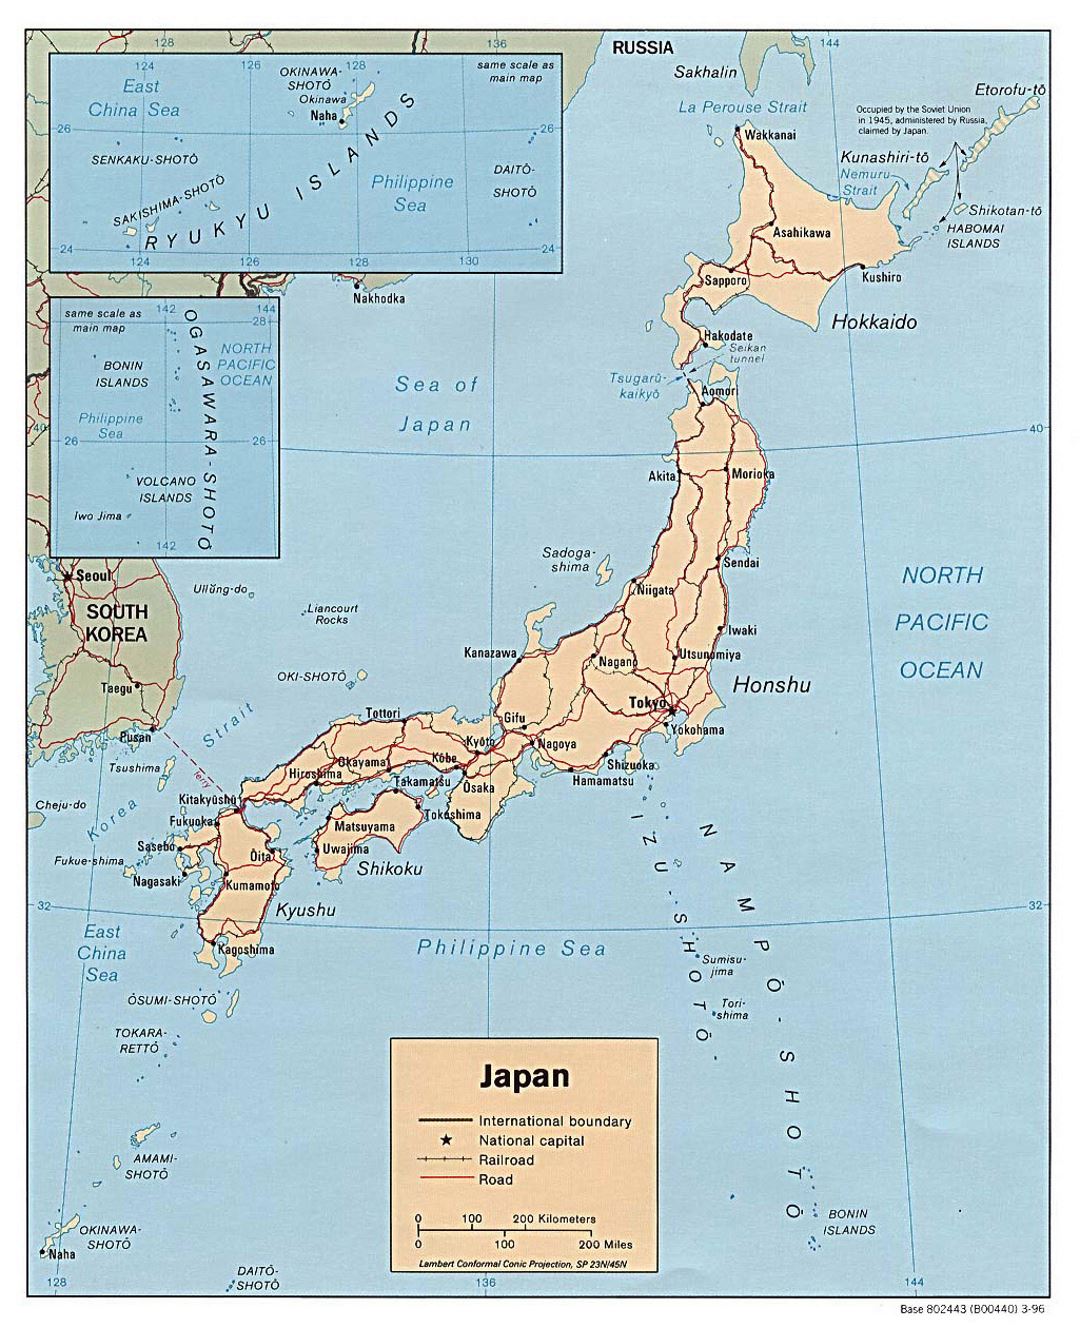 Detallado mapa político de Japón con carreteras, ferrocarriles y principales ciudades - 1996